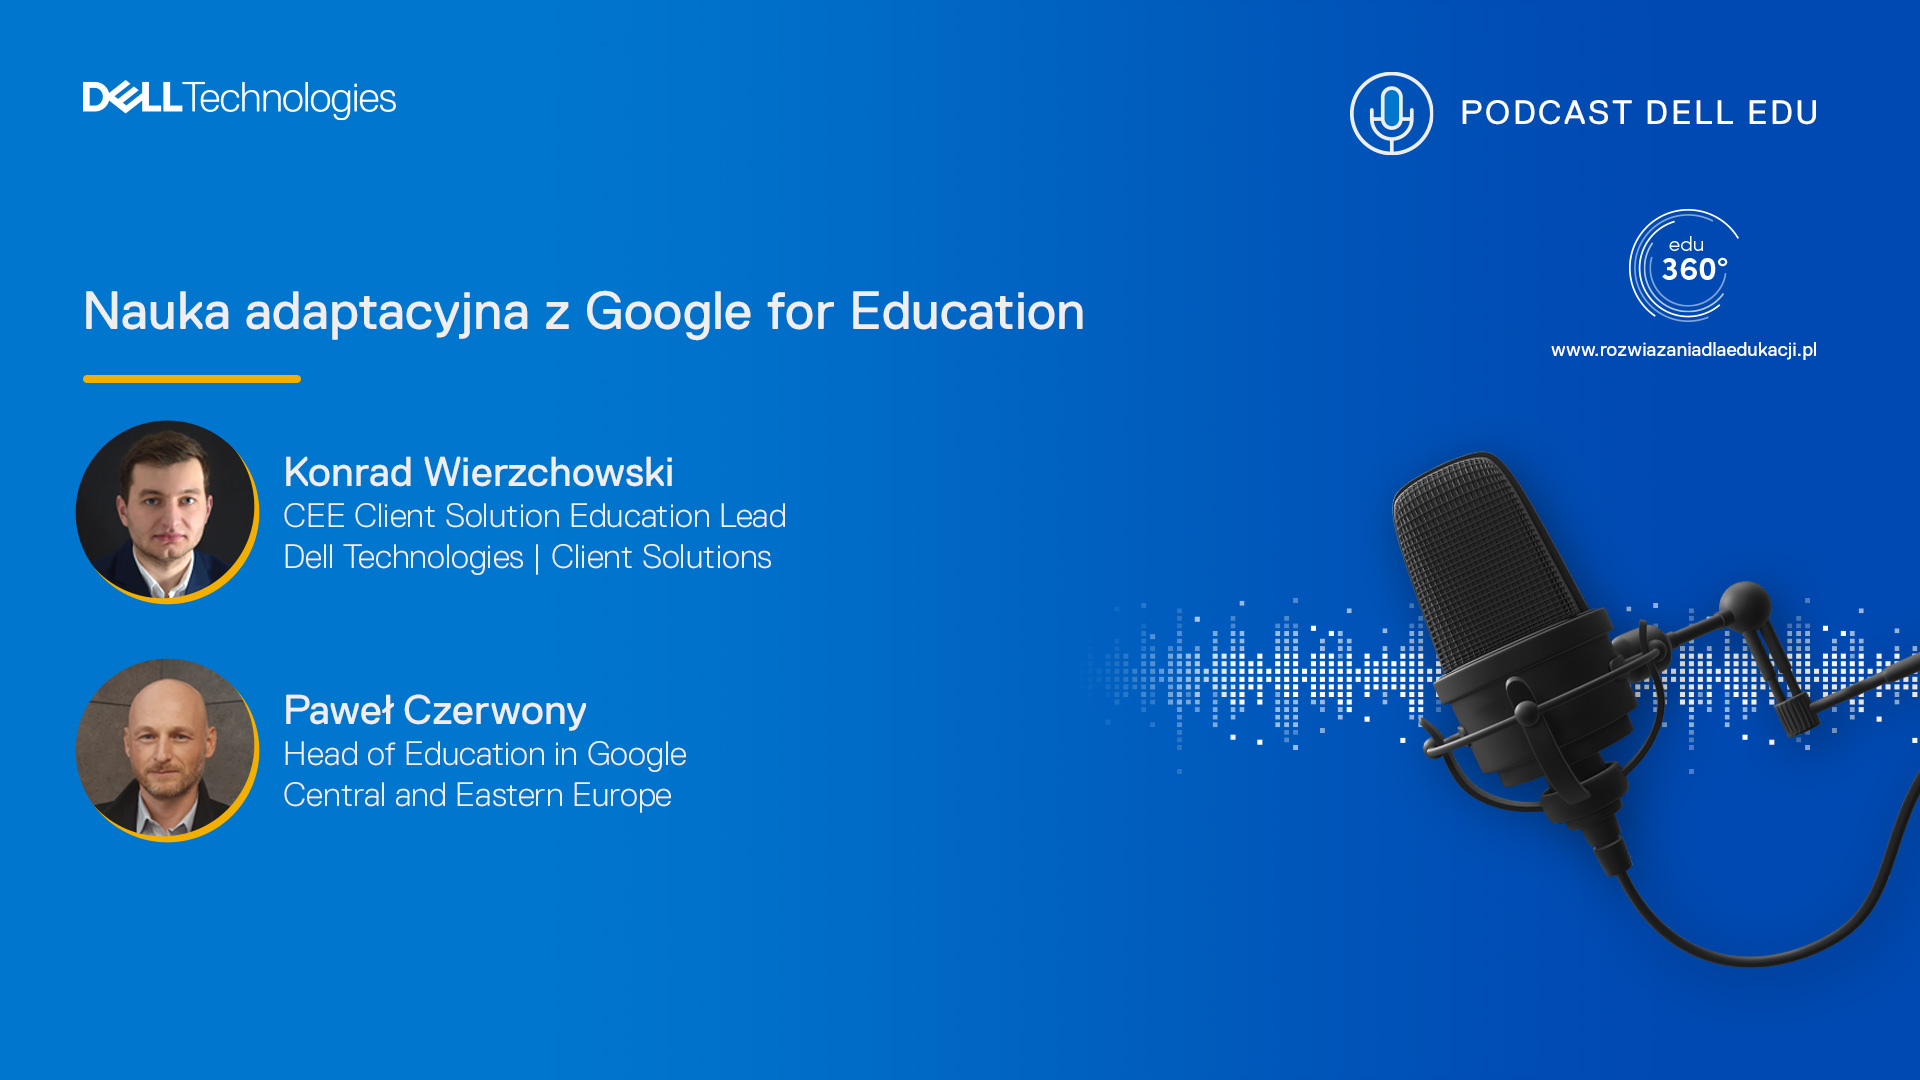 Podcast DELL EDU 360: Nauka adaptacyjna z Google for Education